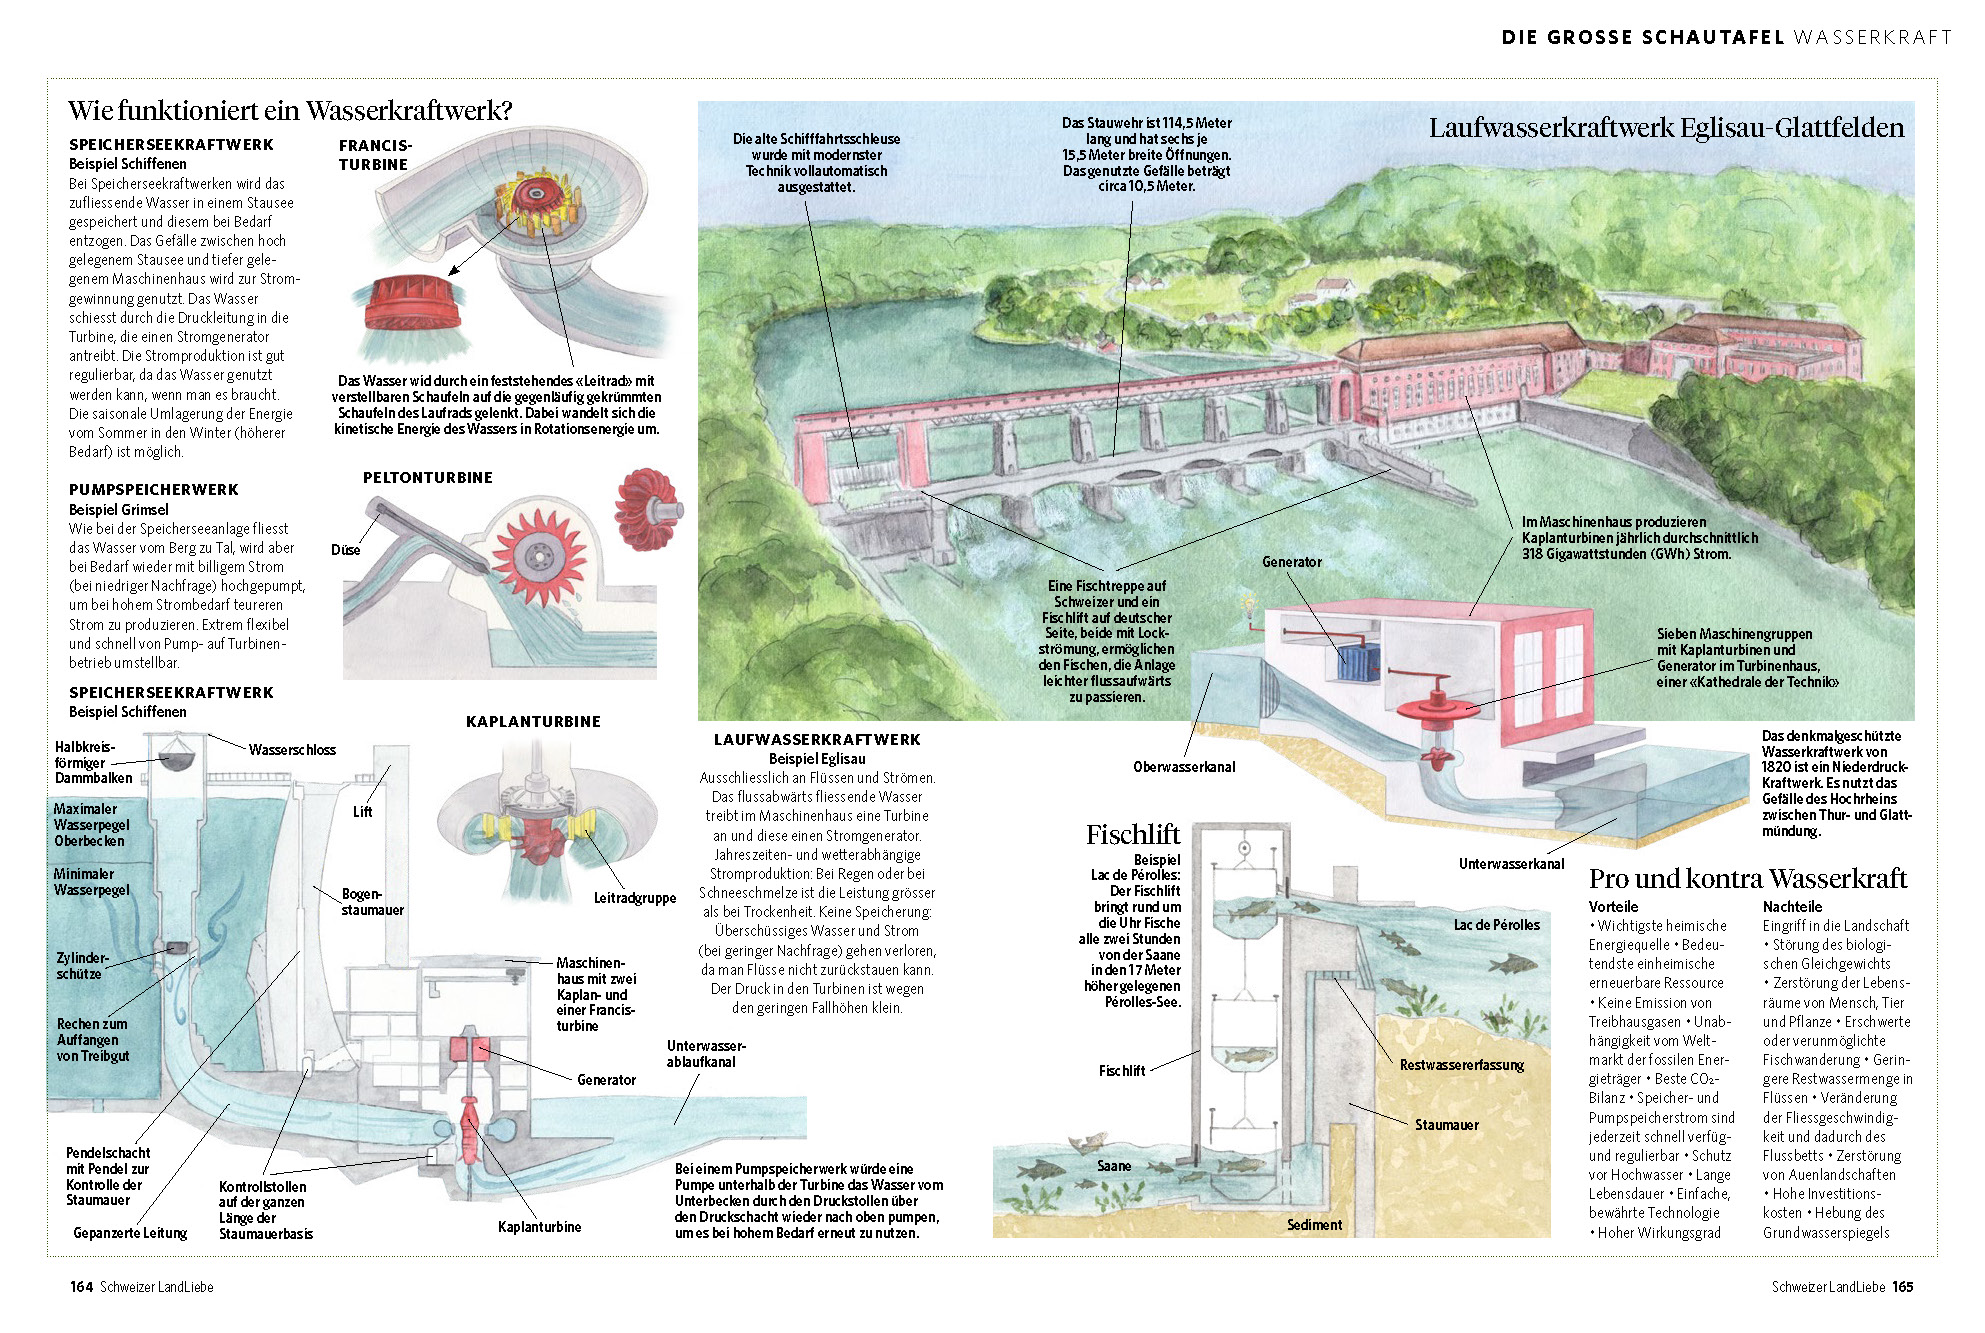 Différents types de centrales hydroélectriques - centrale au fil de l'eau Eglisau - ascenceur